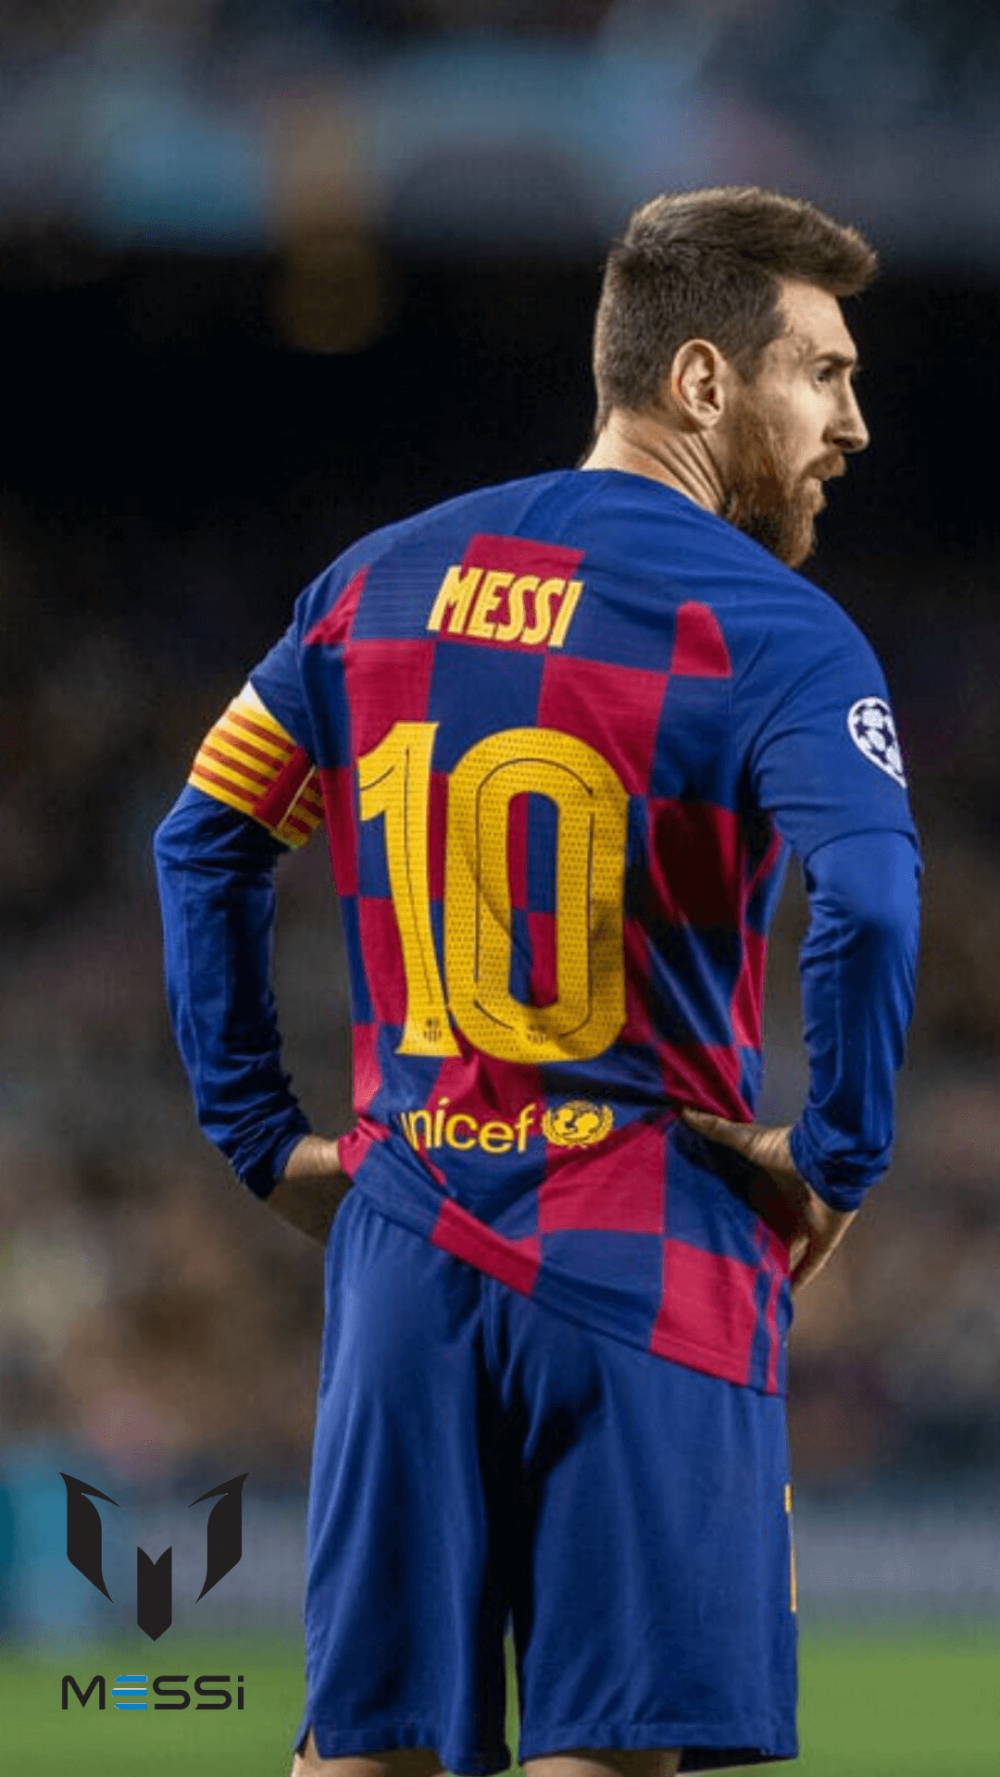 Chiêm ngưỡng chân dung huyền thoại Lionel Messi với bộ ảnh nền 4K vô cùng nghệ thuật cho điện thoại di động của bạn. Đam mê và nghiện ngập bóng đá không thể bỏ qua ai hết đặc biệt là fan Messi.